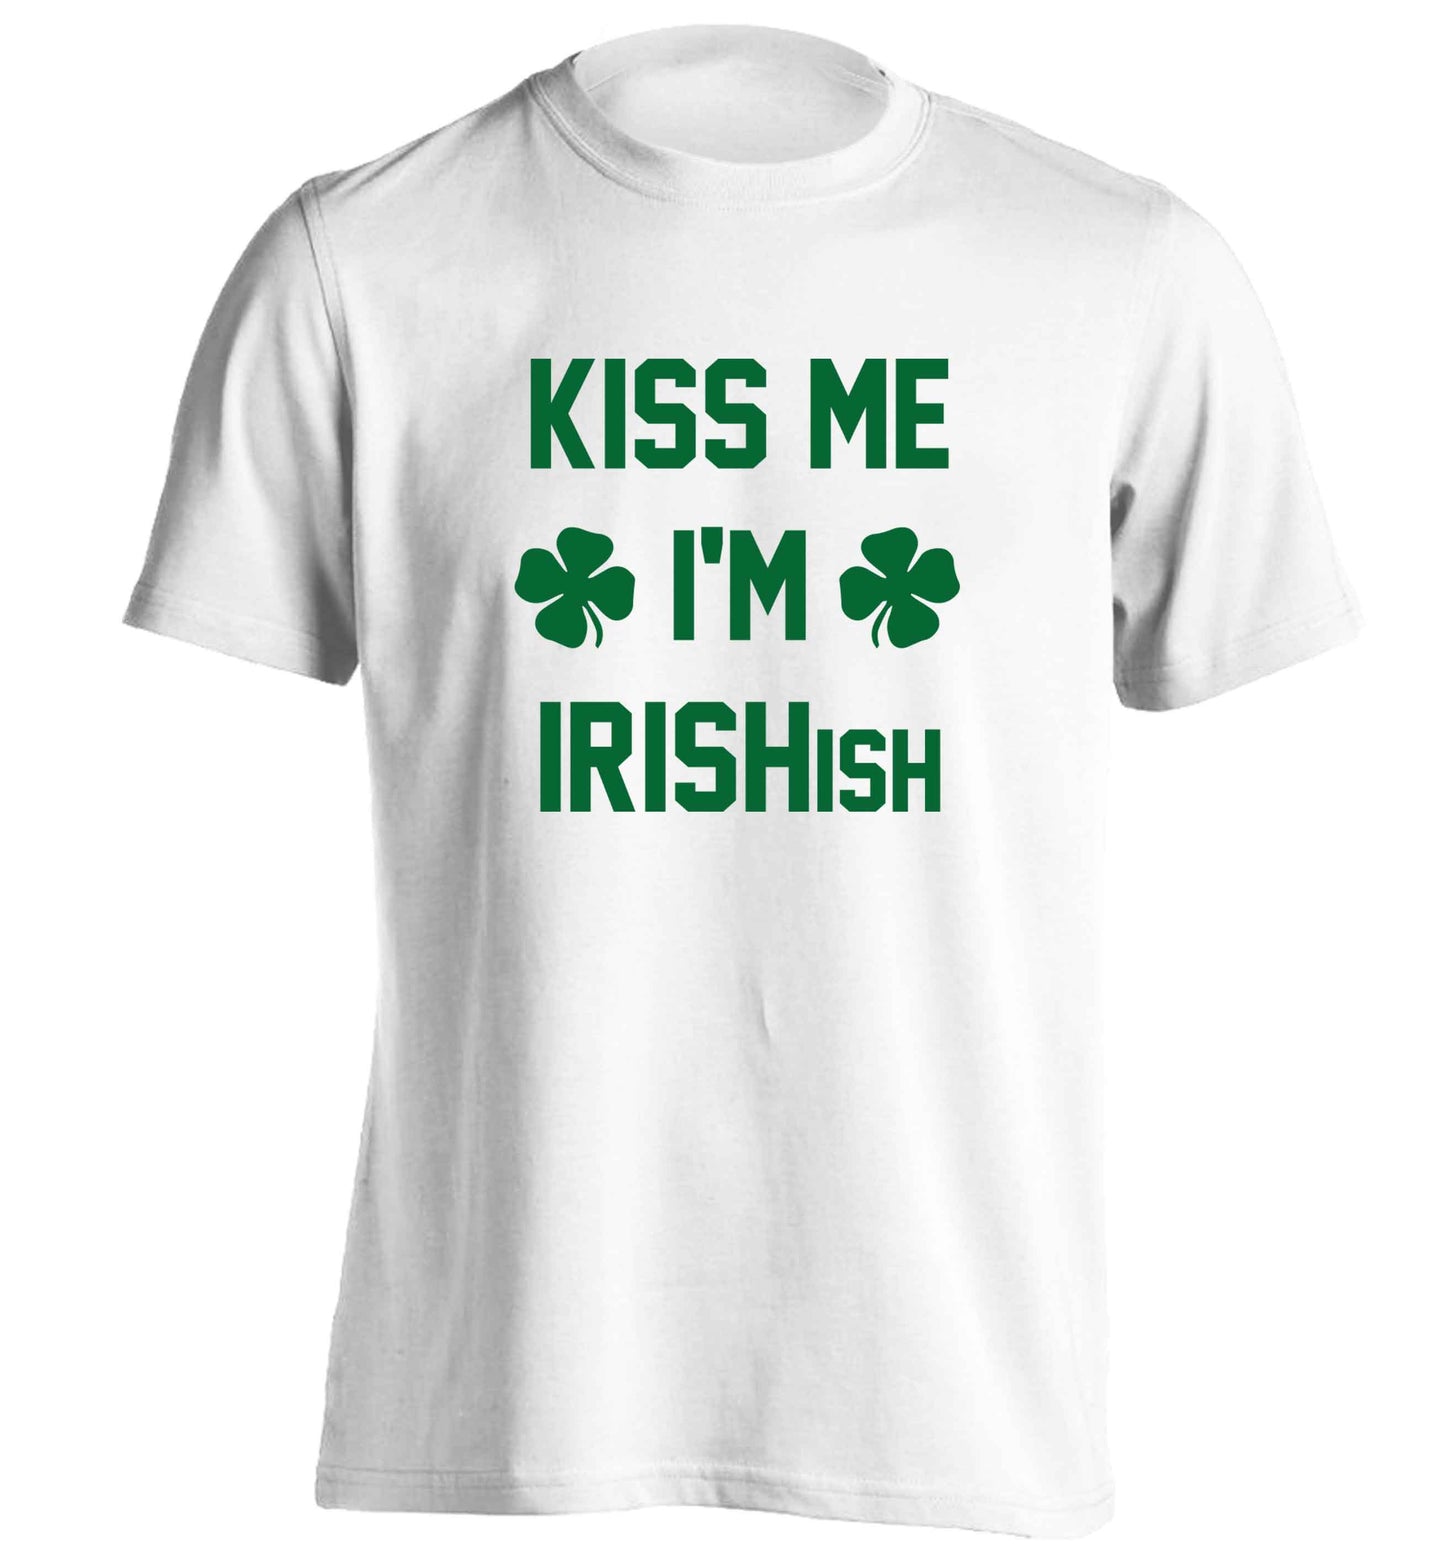 Kiss me I'm Irishish adults unisex white Tshirt 2XL